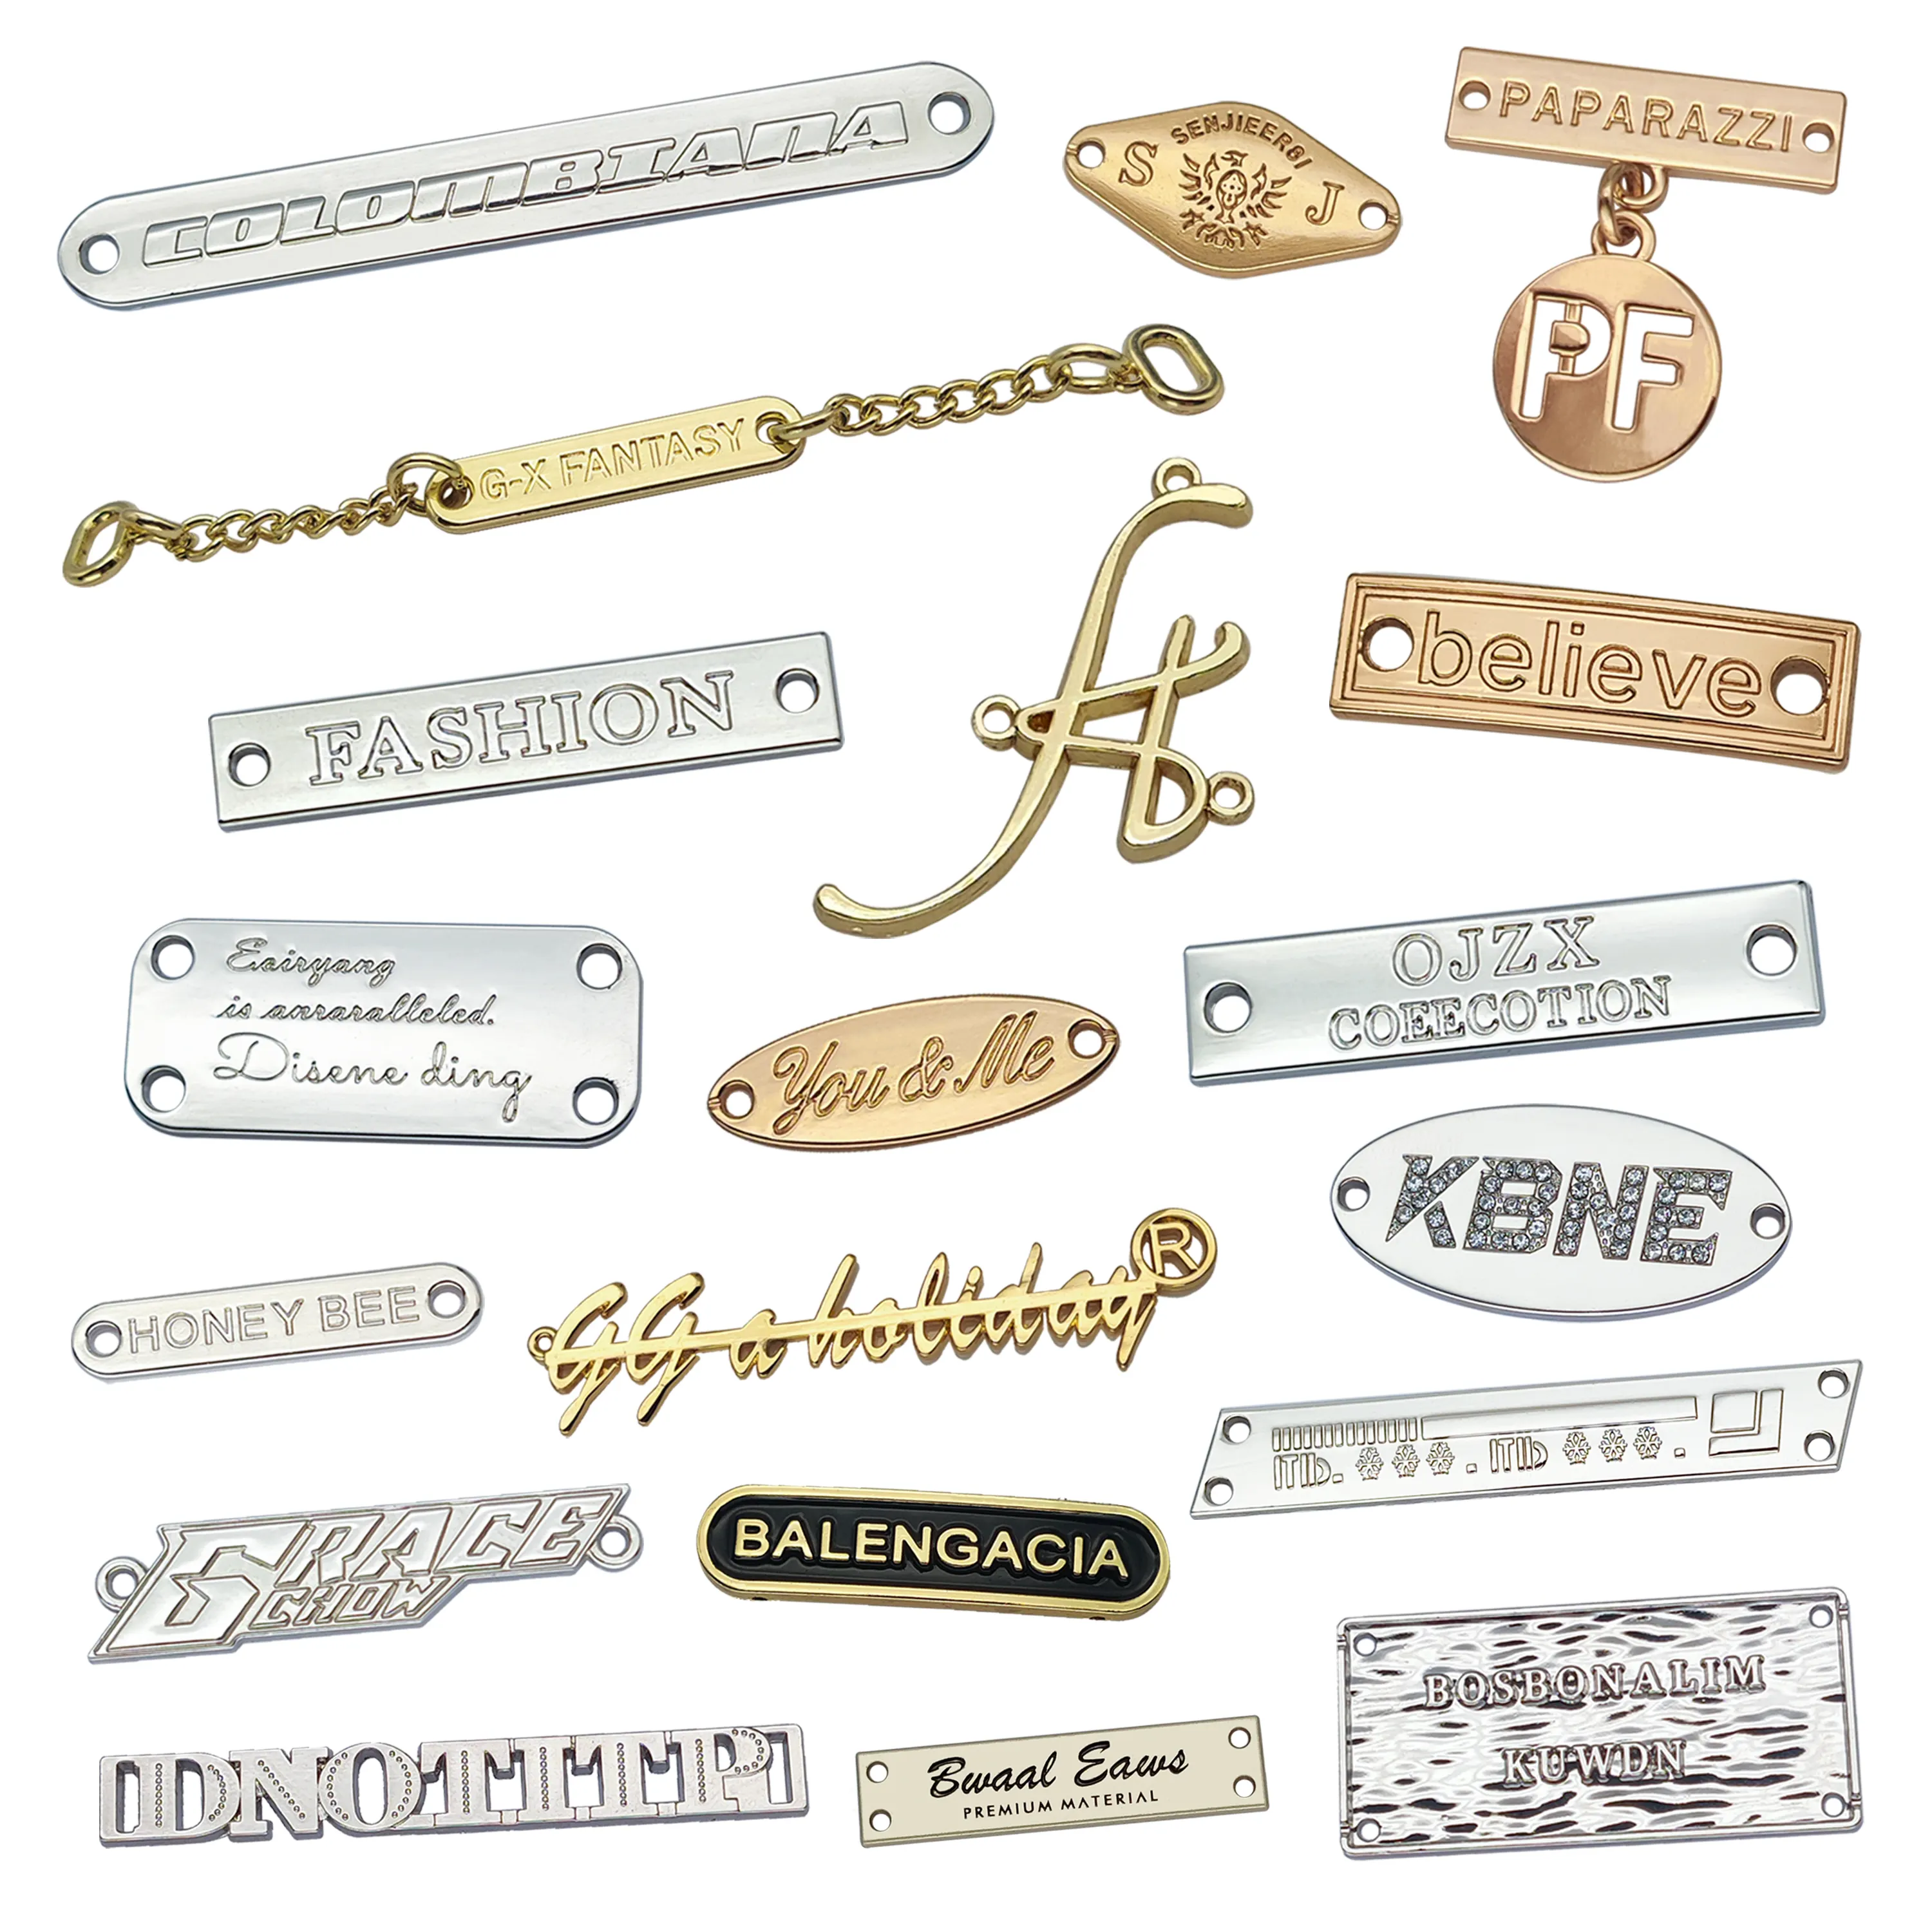 Benutzer definierte Metall Namensschild Handtasche Hardware Zubehör Geprägte Metall Etikett Tags Marke Metall Logo Design